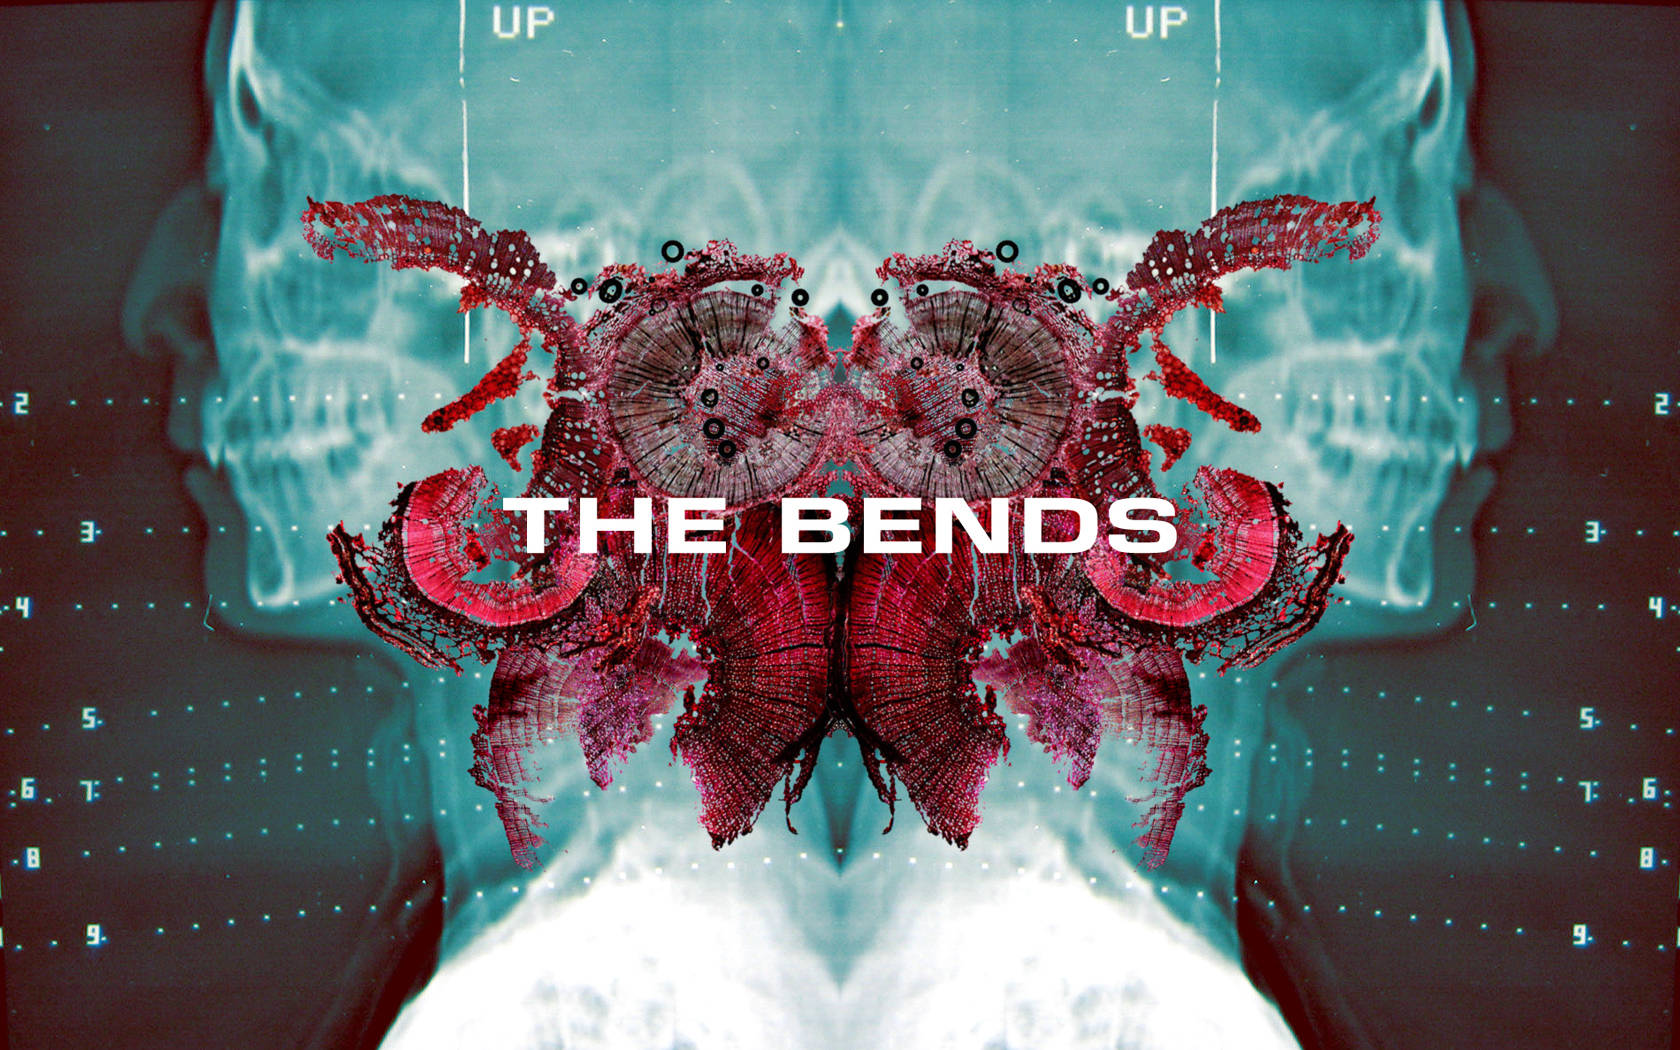 Radioheaddas Bends Album Cover Wallpaper